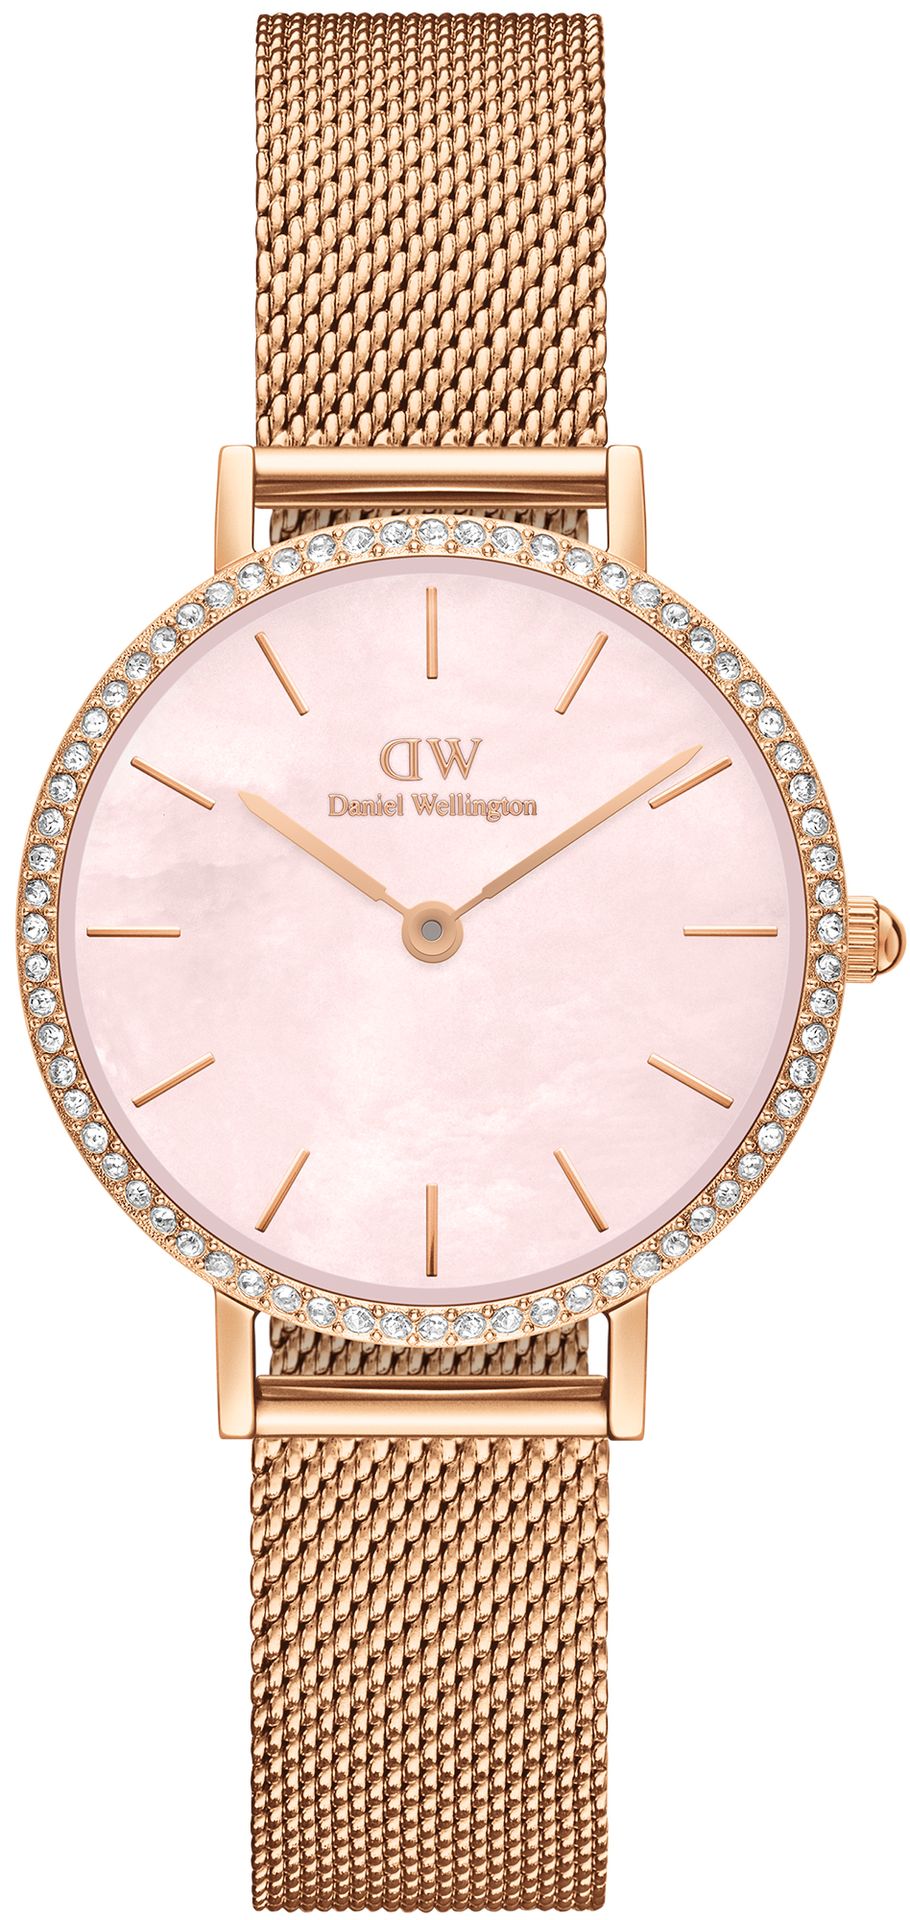 Zegarek Daniel Wellington DW00100663 Petite Lumine Bezel Melrose Pink MOP 28 mm - Natychmiastowa WYSYŁKA 0zł (DHL DPD INPOST) | Grawer 1zł | Zwrot 100 dni